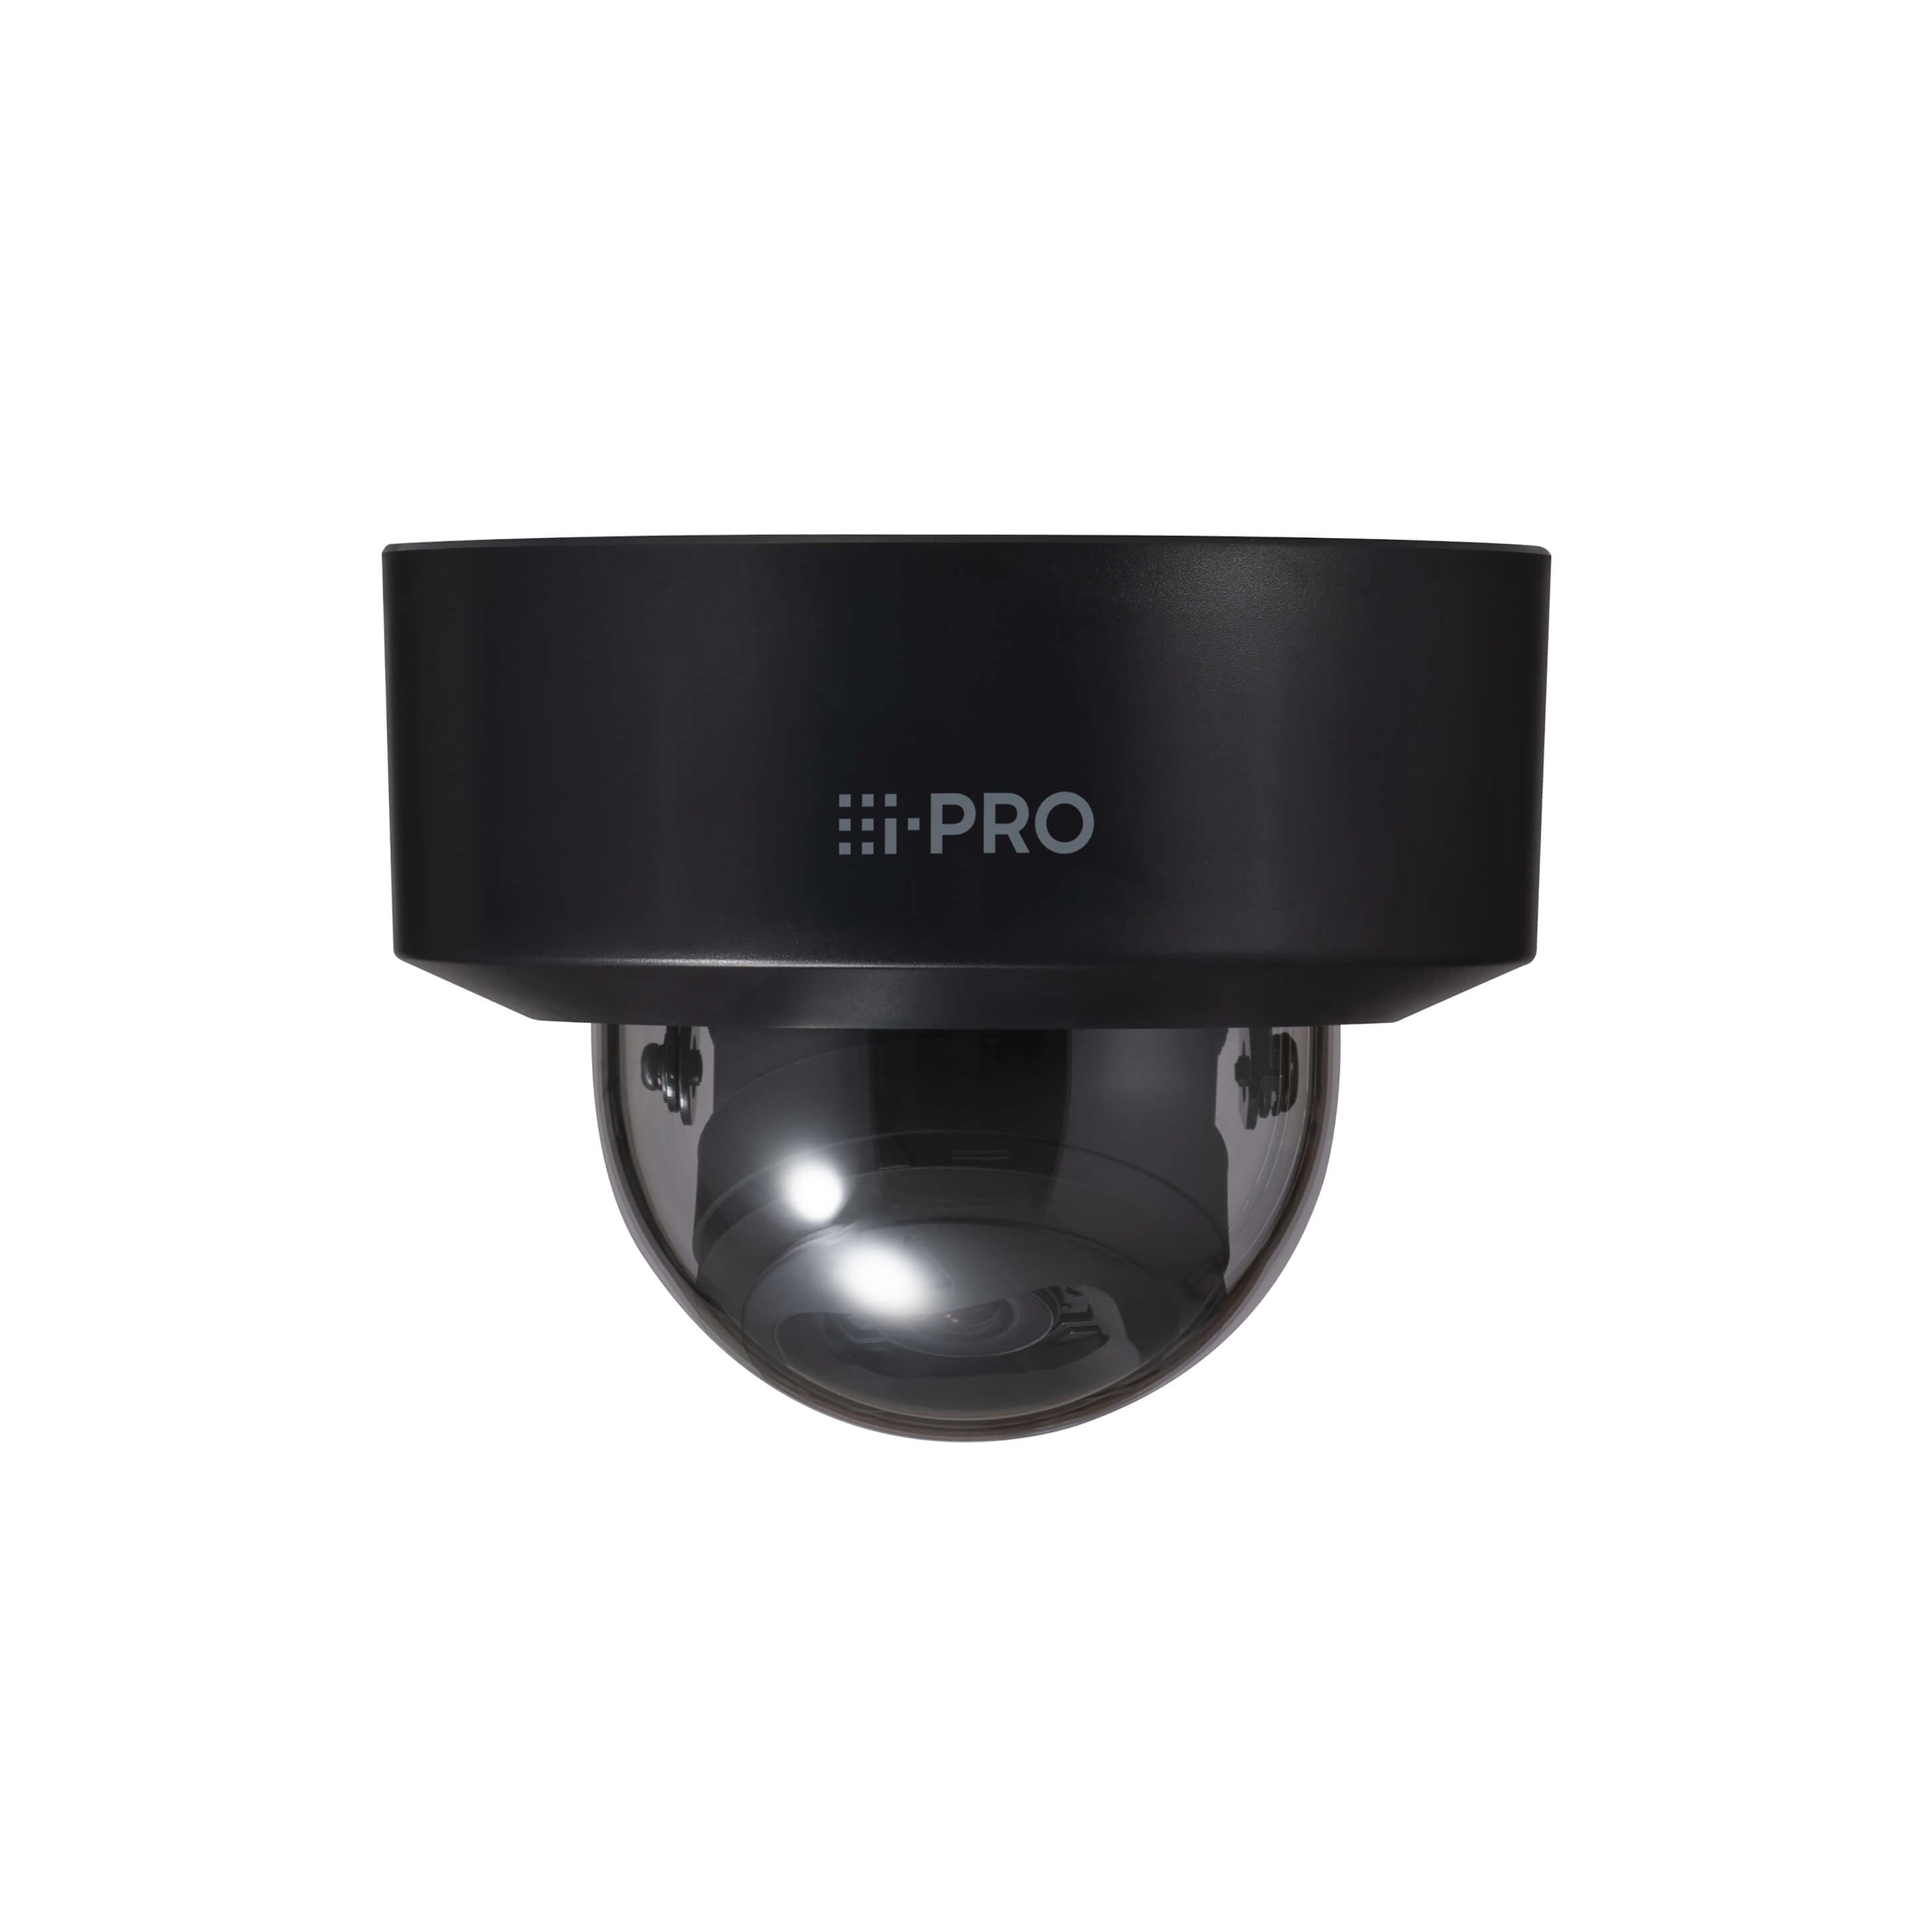 i-PRO WV-S22500-V3L1 5MP Vandal Resistant Indoor Dome Network Camera